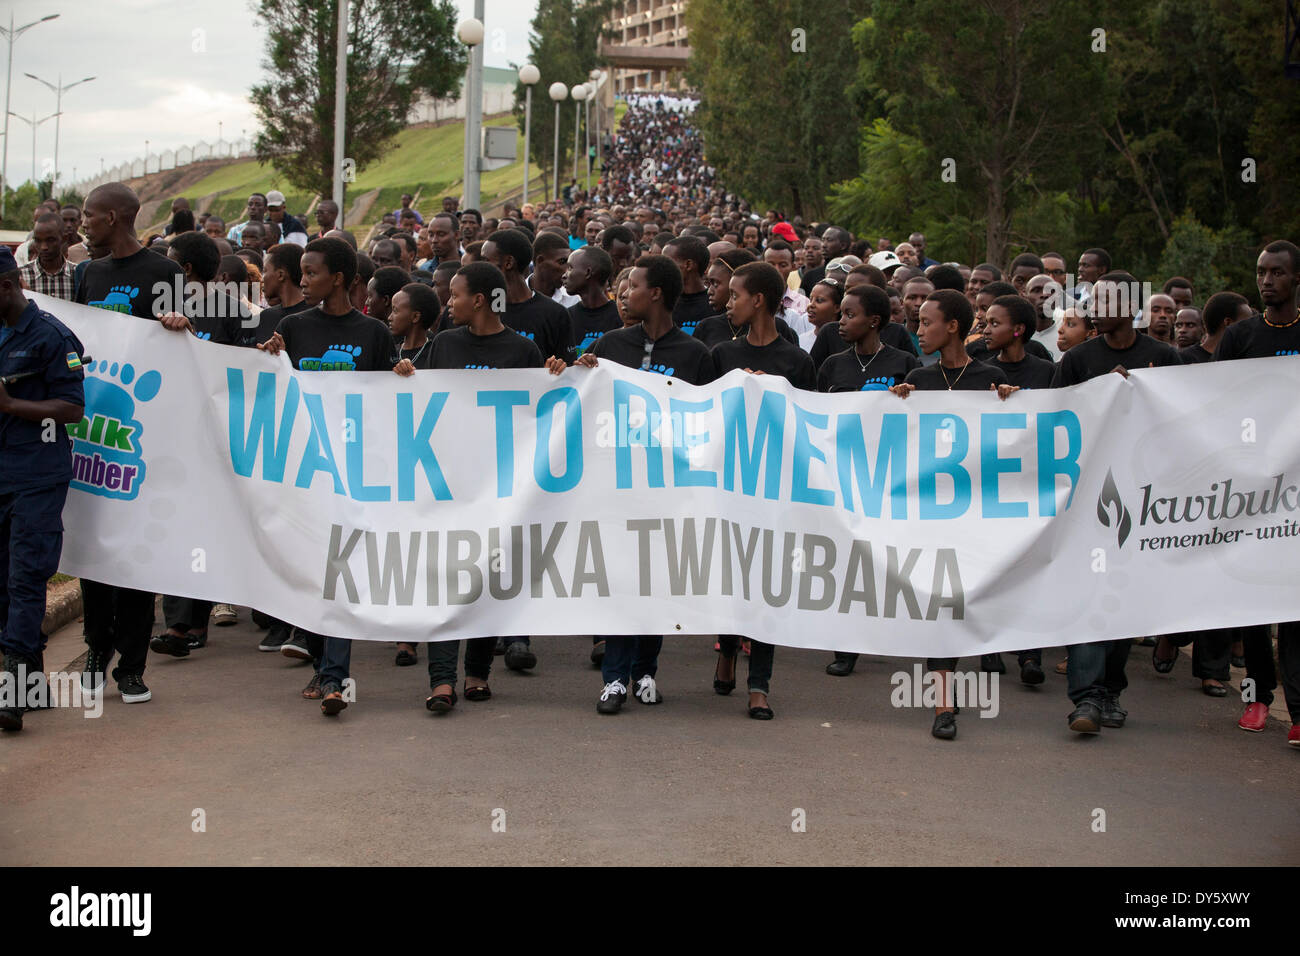 A Kigali, Ruanda. Il 7 aprile 2014. Ruandesi prendere parte in 'Kwibuka Twiyubaka a piedi da ricordare. Il cammino iniziato presso il parlamento ruandese e conclusa presso lo stadio Amahoro. Quest anno ricorre il ventesimo anniversario del genocidio contro i tutsi. Durante i circa 100 giorni dal 7 Aprile, 1994 a metà luglio, un importo stimato di 500.000 1.000.000 ruandesi sono stati uccisi, costituente tanto quanto il 20% della popolazione totale del paese e 70% dei Tutsi allora viventi in Ruanda.© Alamy Foto Stock